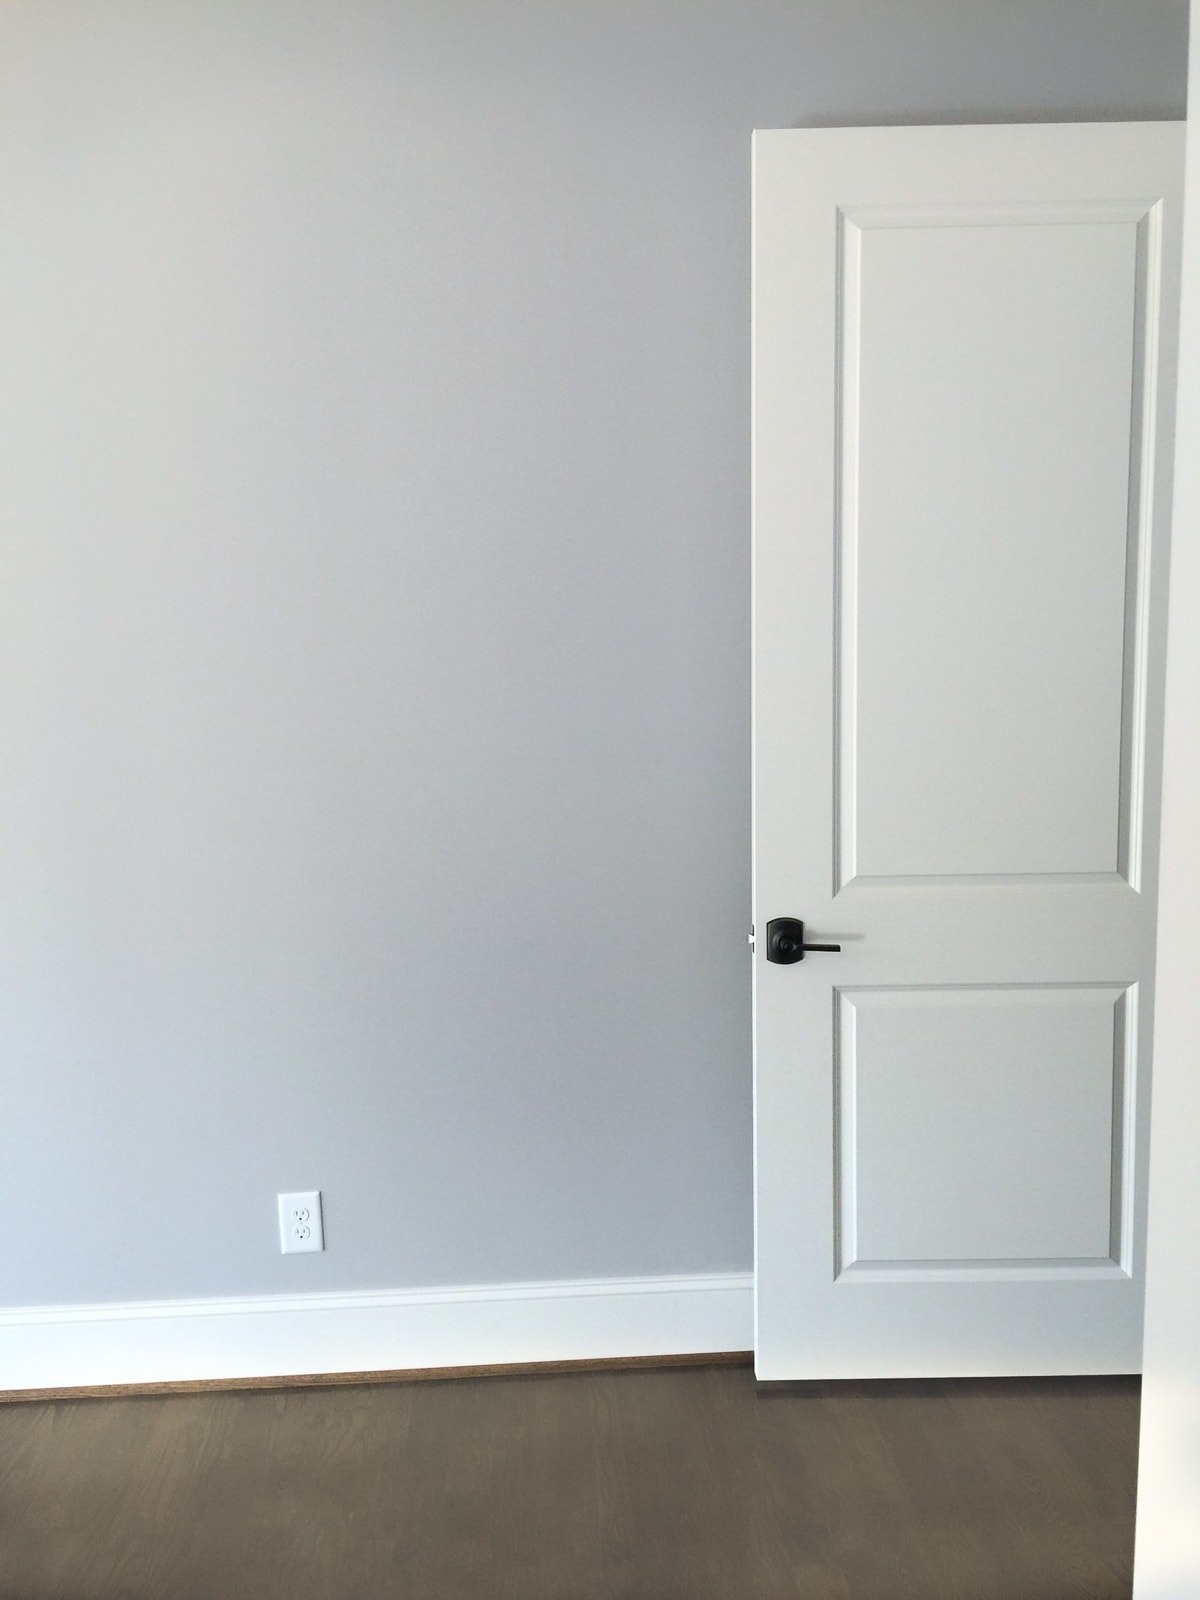 Alabaster door and trim with gray walls.